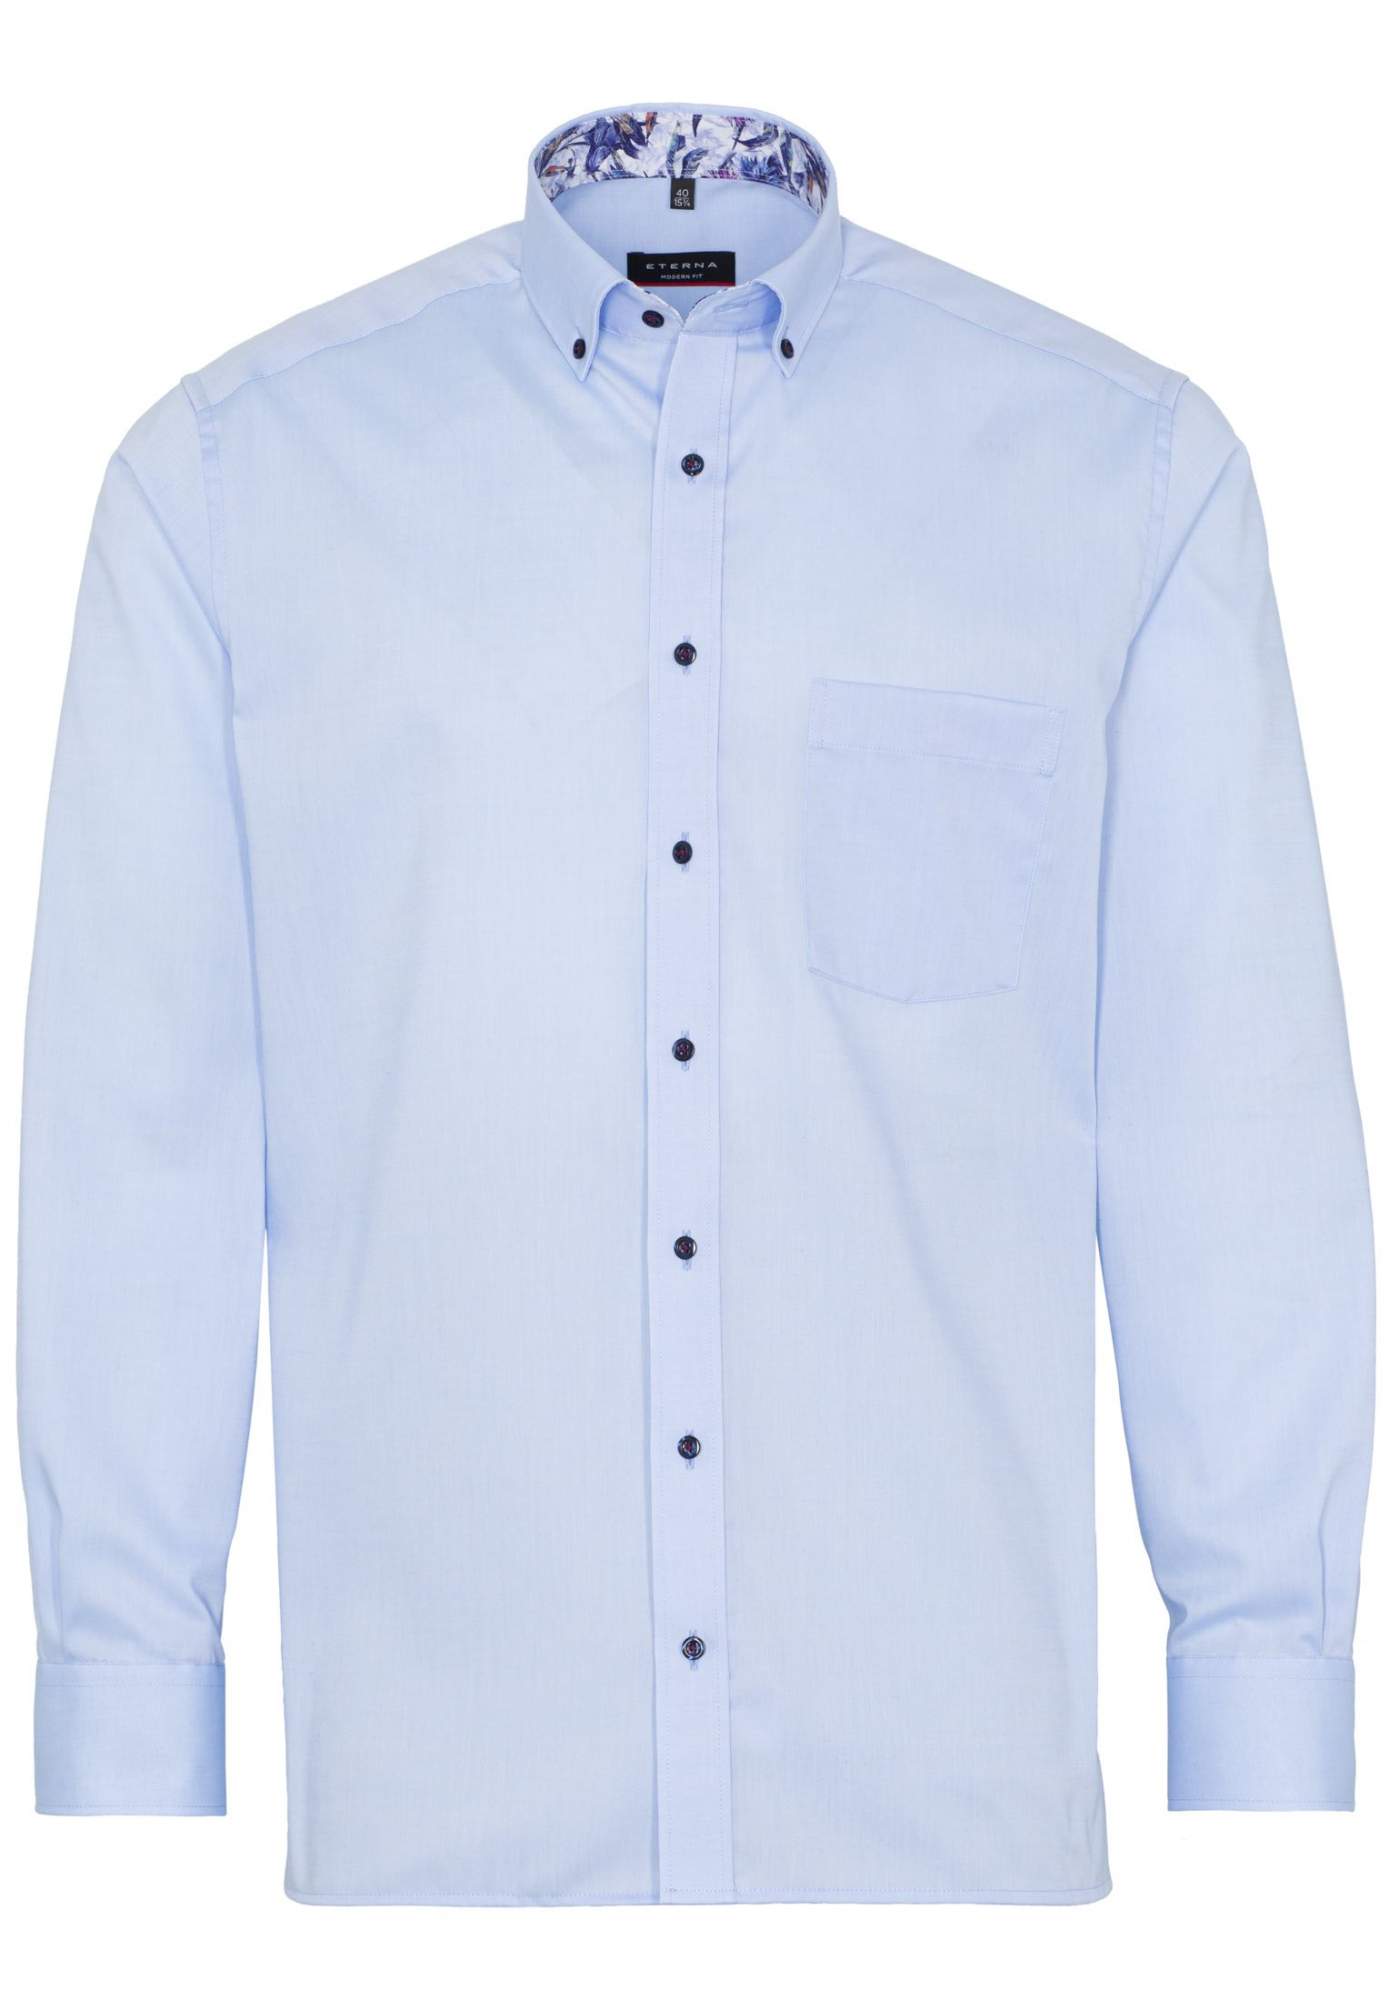 Рубашка мужская ETERNA 8102-10-X143 голубая 43